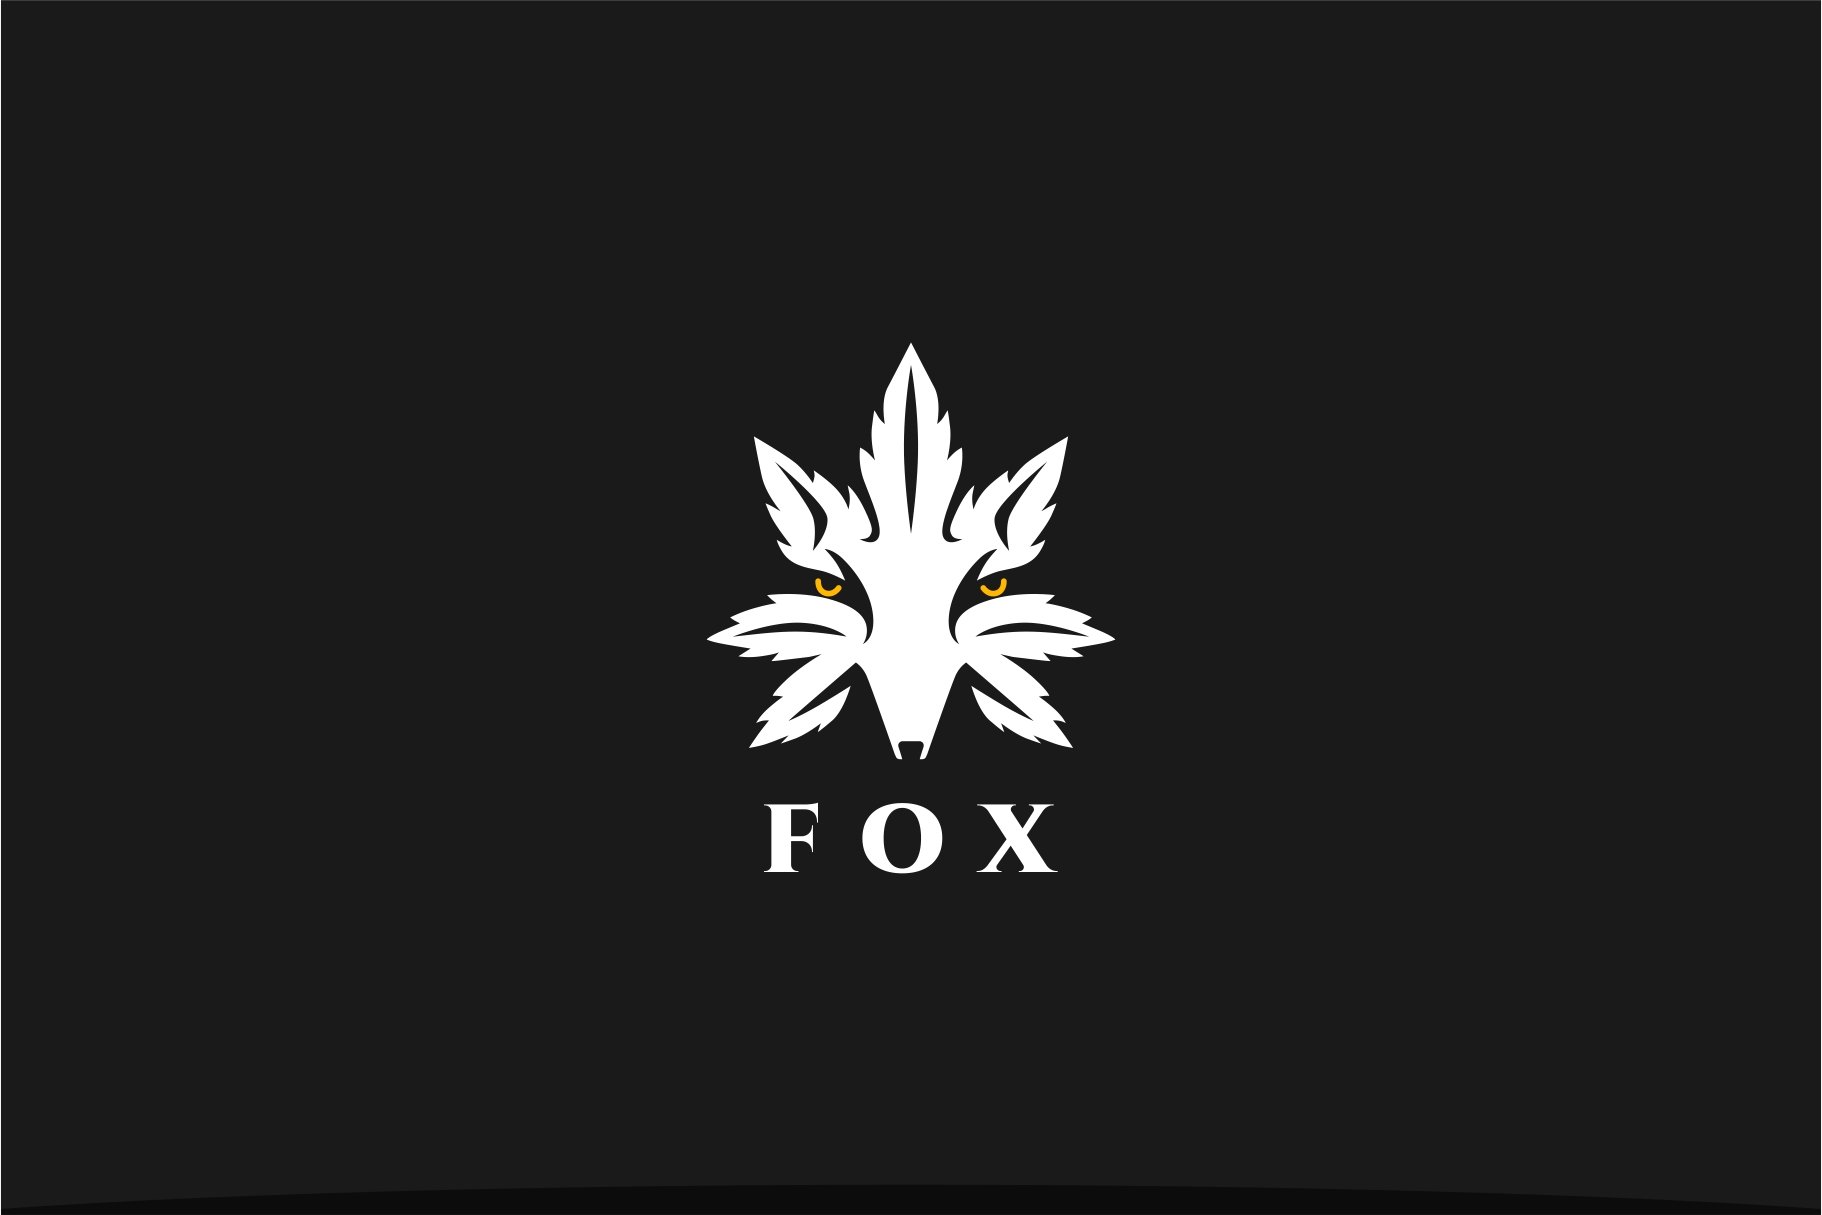 Cannabis Fox Logo cover image.